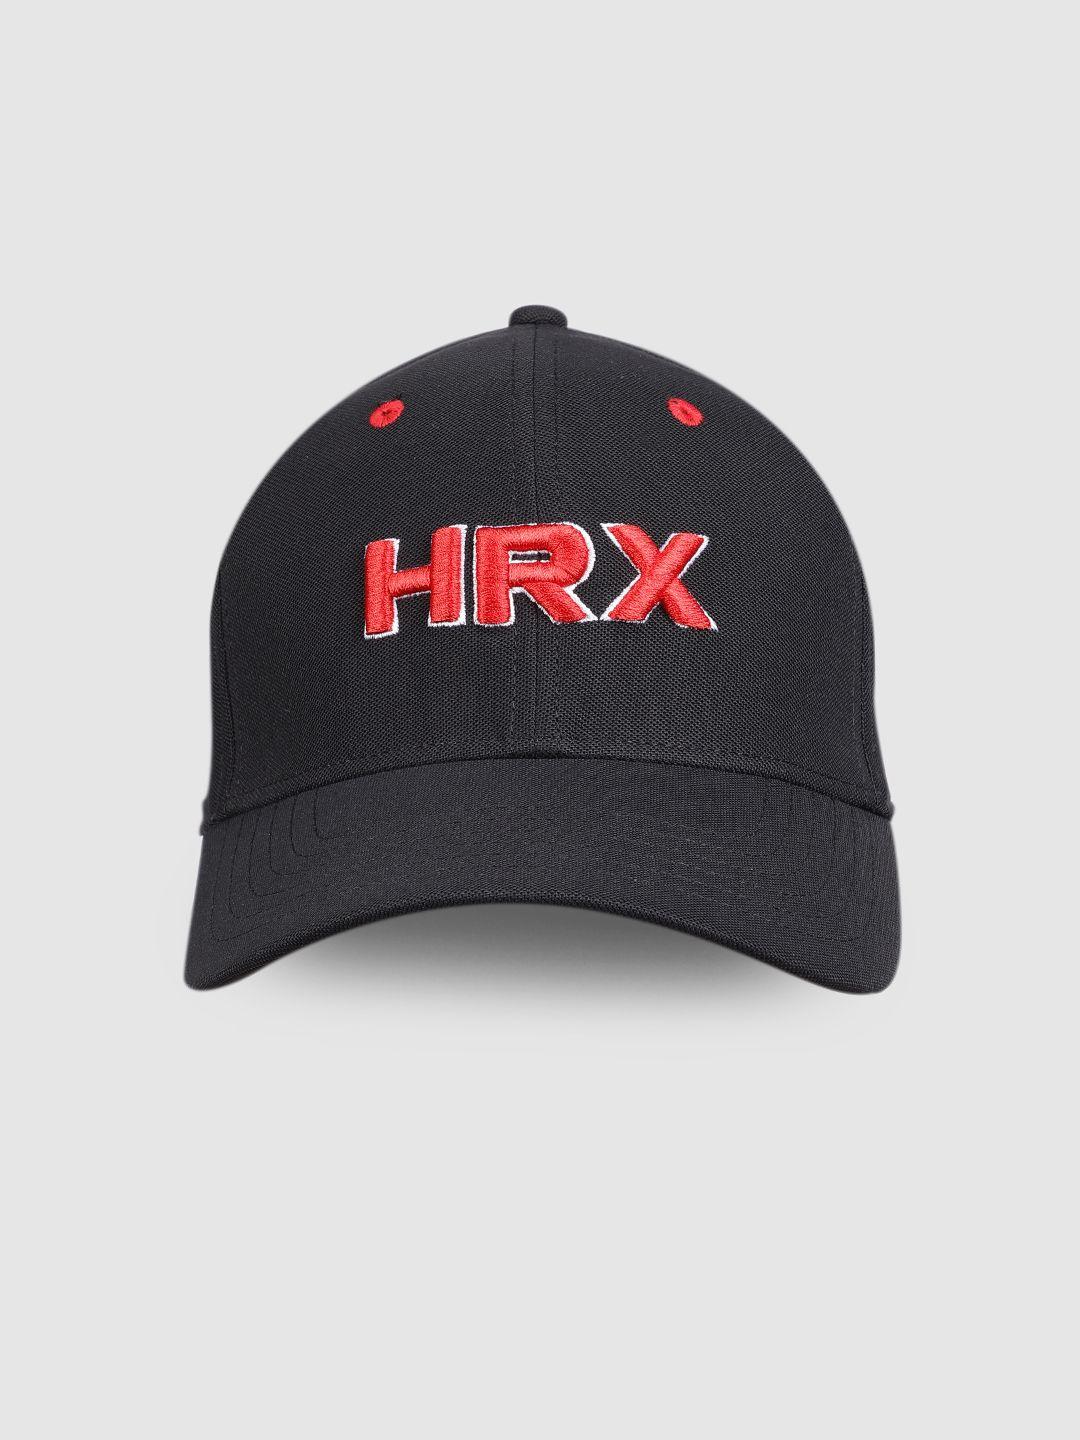 hrx by hrithik roshan unisex black embroidered baseball cap